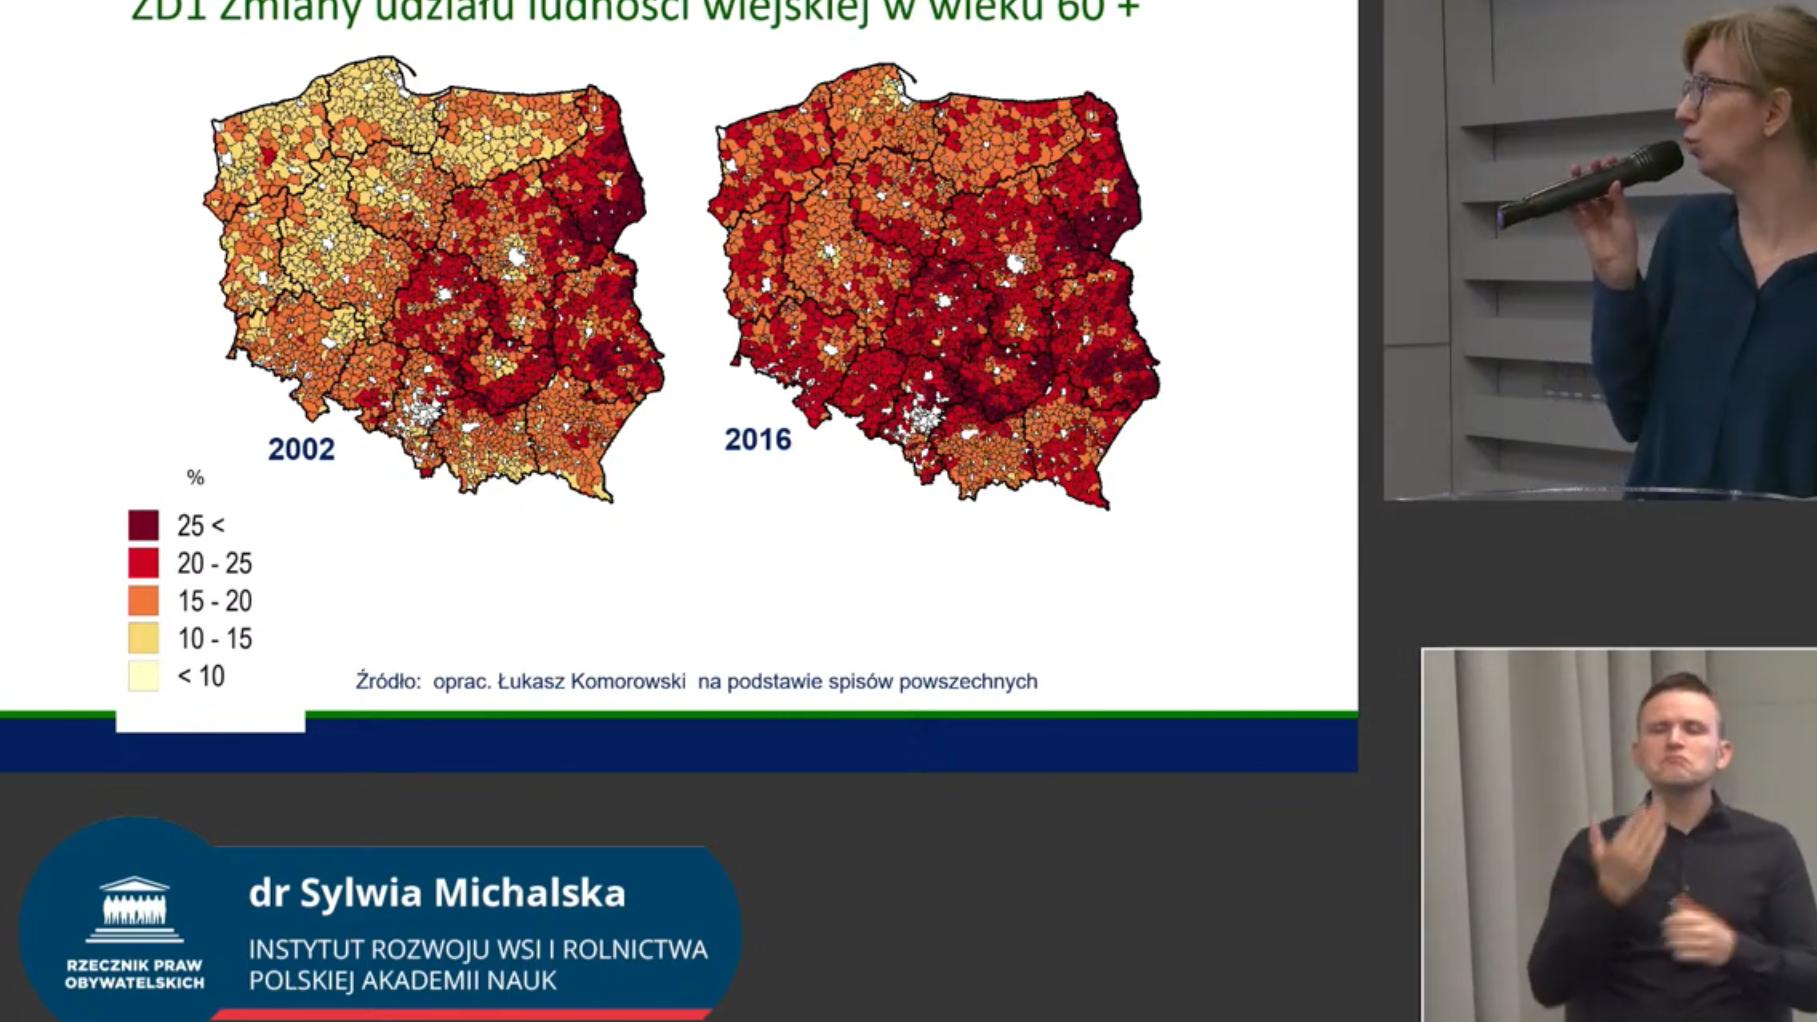 Kobieta pokazuje prezentację, obok tłomaczka PJM. Na prezentacji dwie mapy Polski, z 2002 r i z 2016 r. pokazujące, jak starzeje się przede wszystkim Polska wschodnia i środkowa